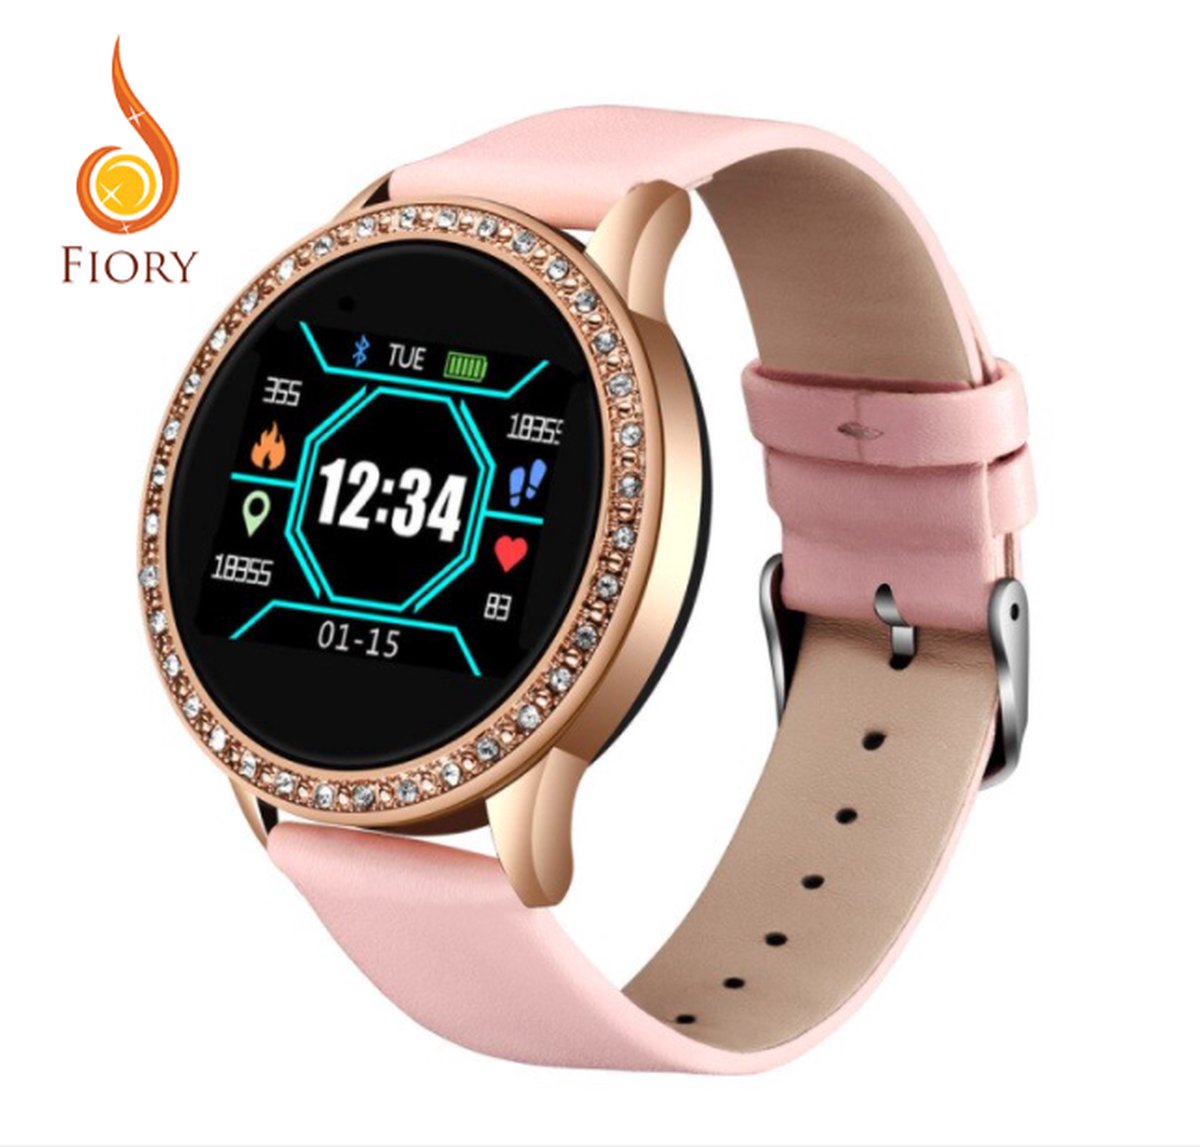 Fiory BW0079 Smart Horloge roze| | Bluetooth horloge goud | Sporthorloge| Stappenteller| Bloeddruk en hartslag| calorieenmeter| foto's maken| melding berichten en telefoons| roze